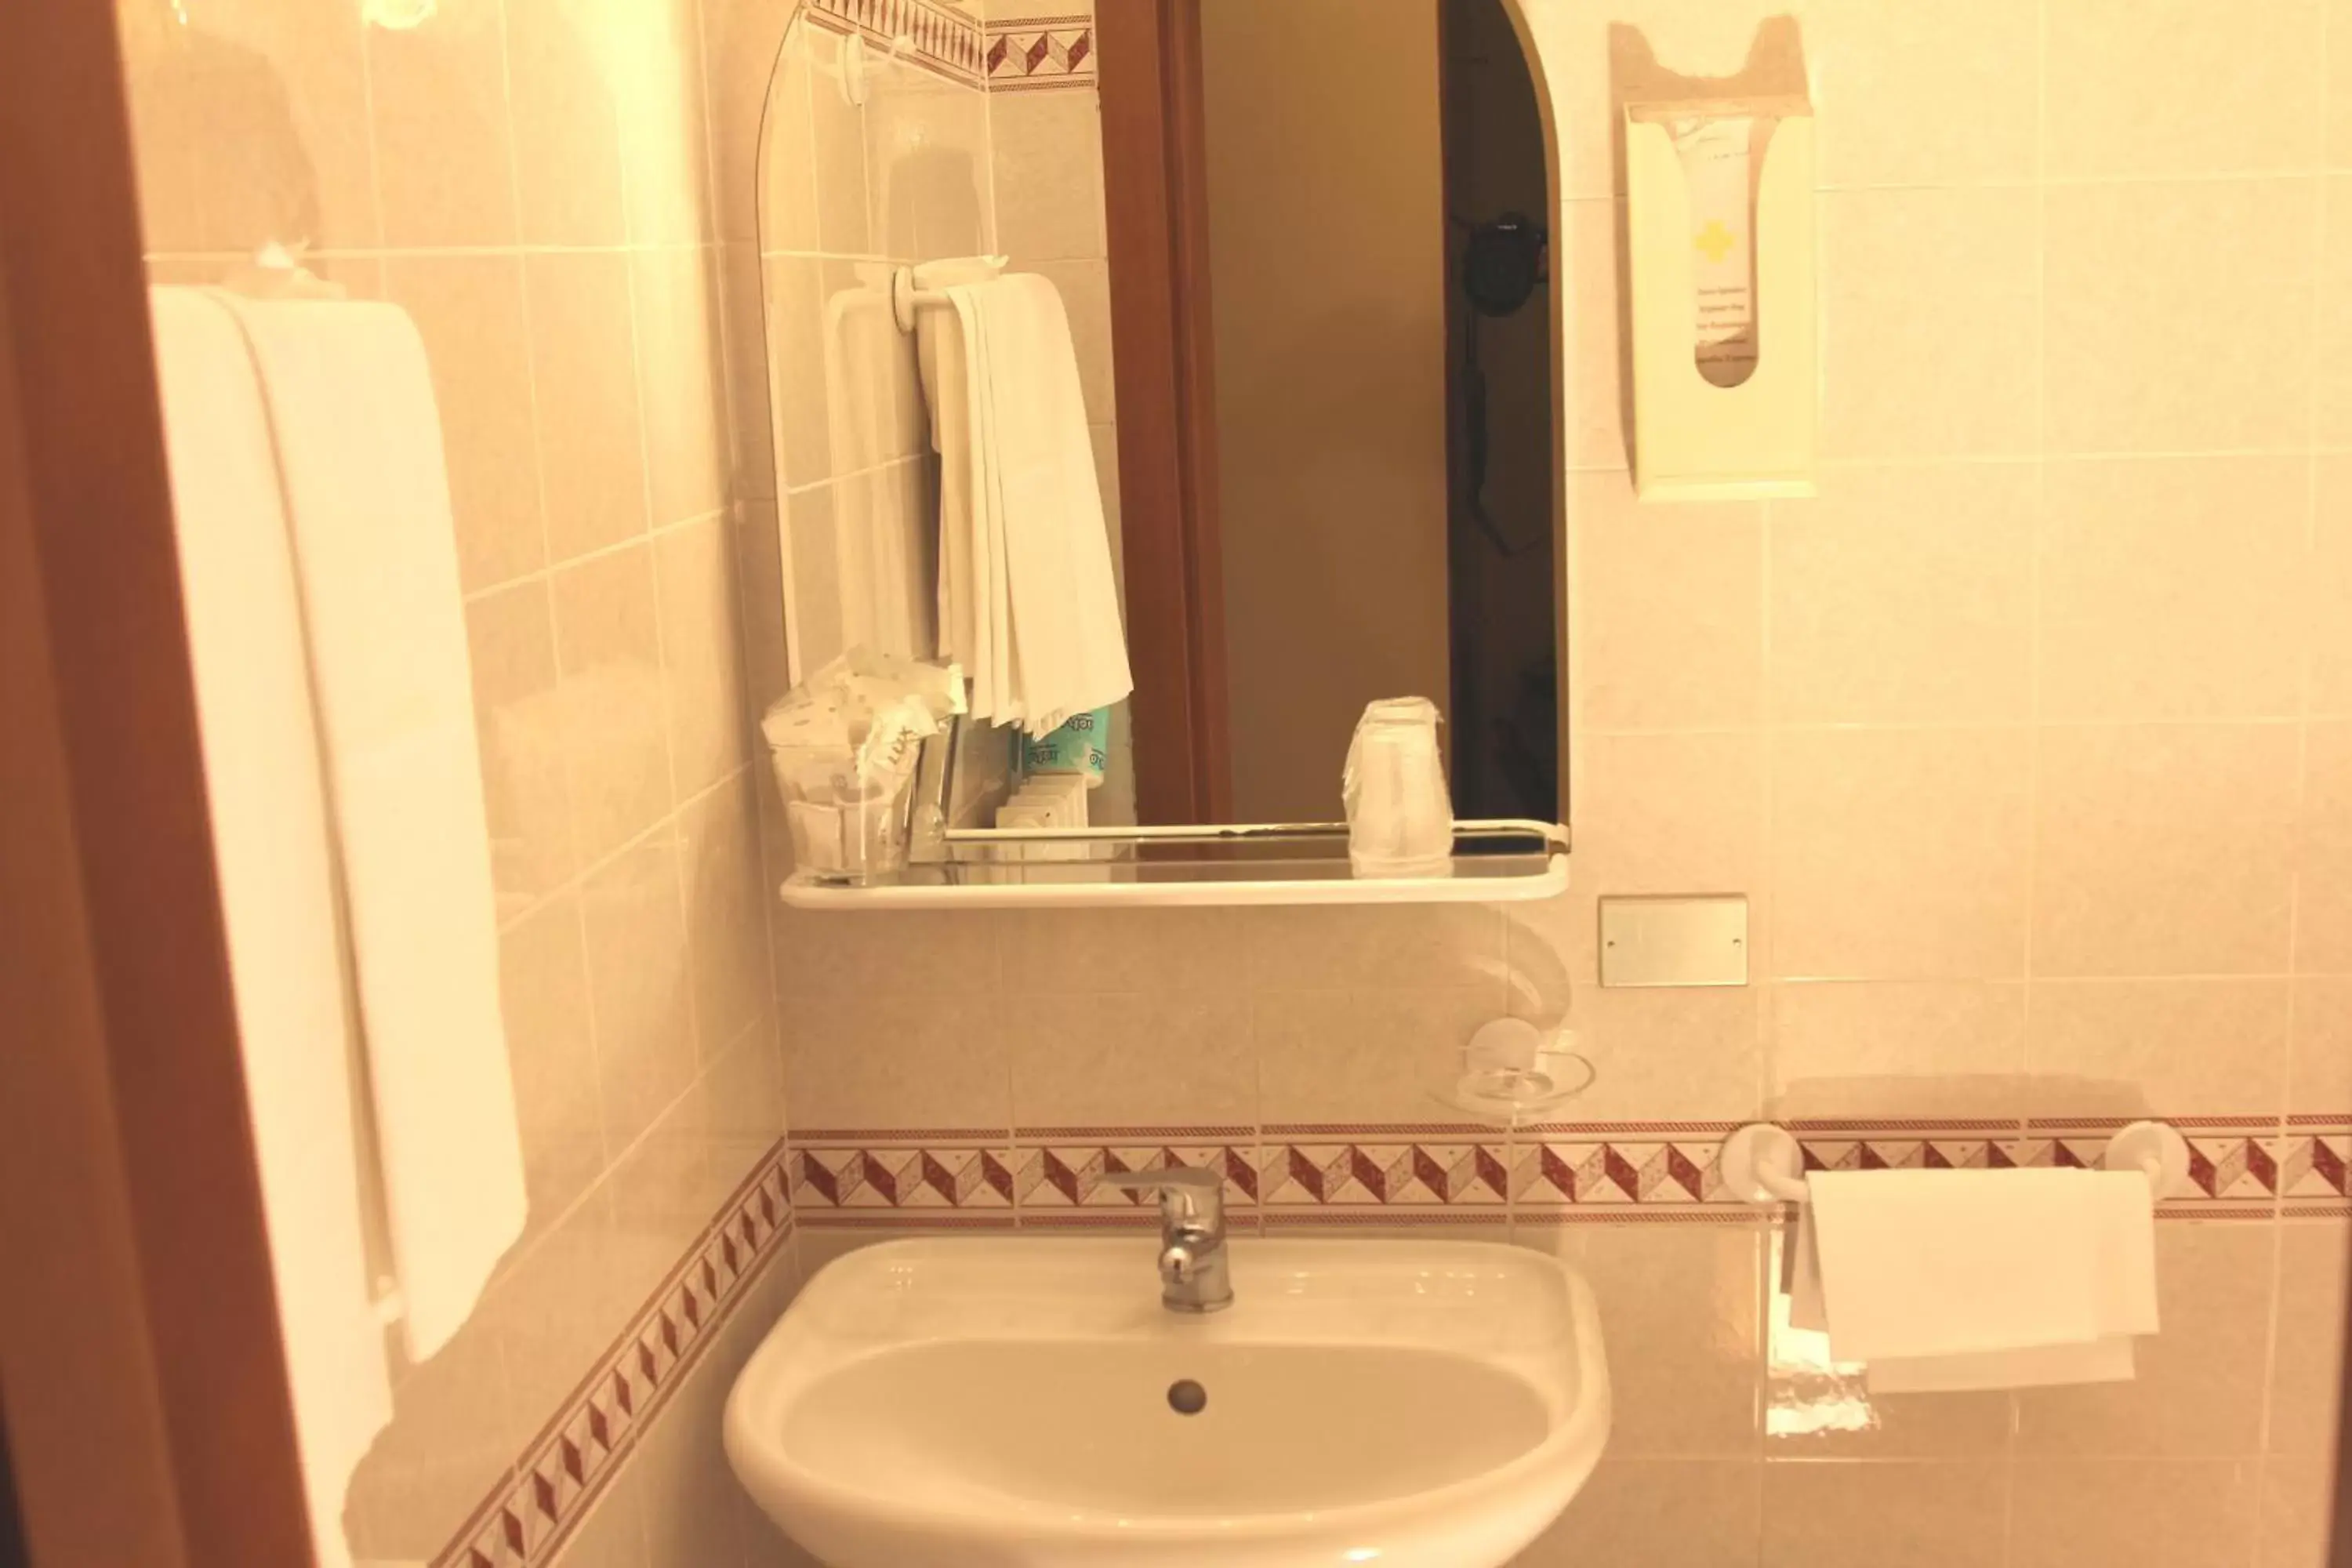 Bathroom in Hotel Trattoria Pallotta